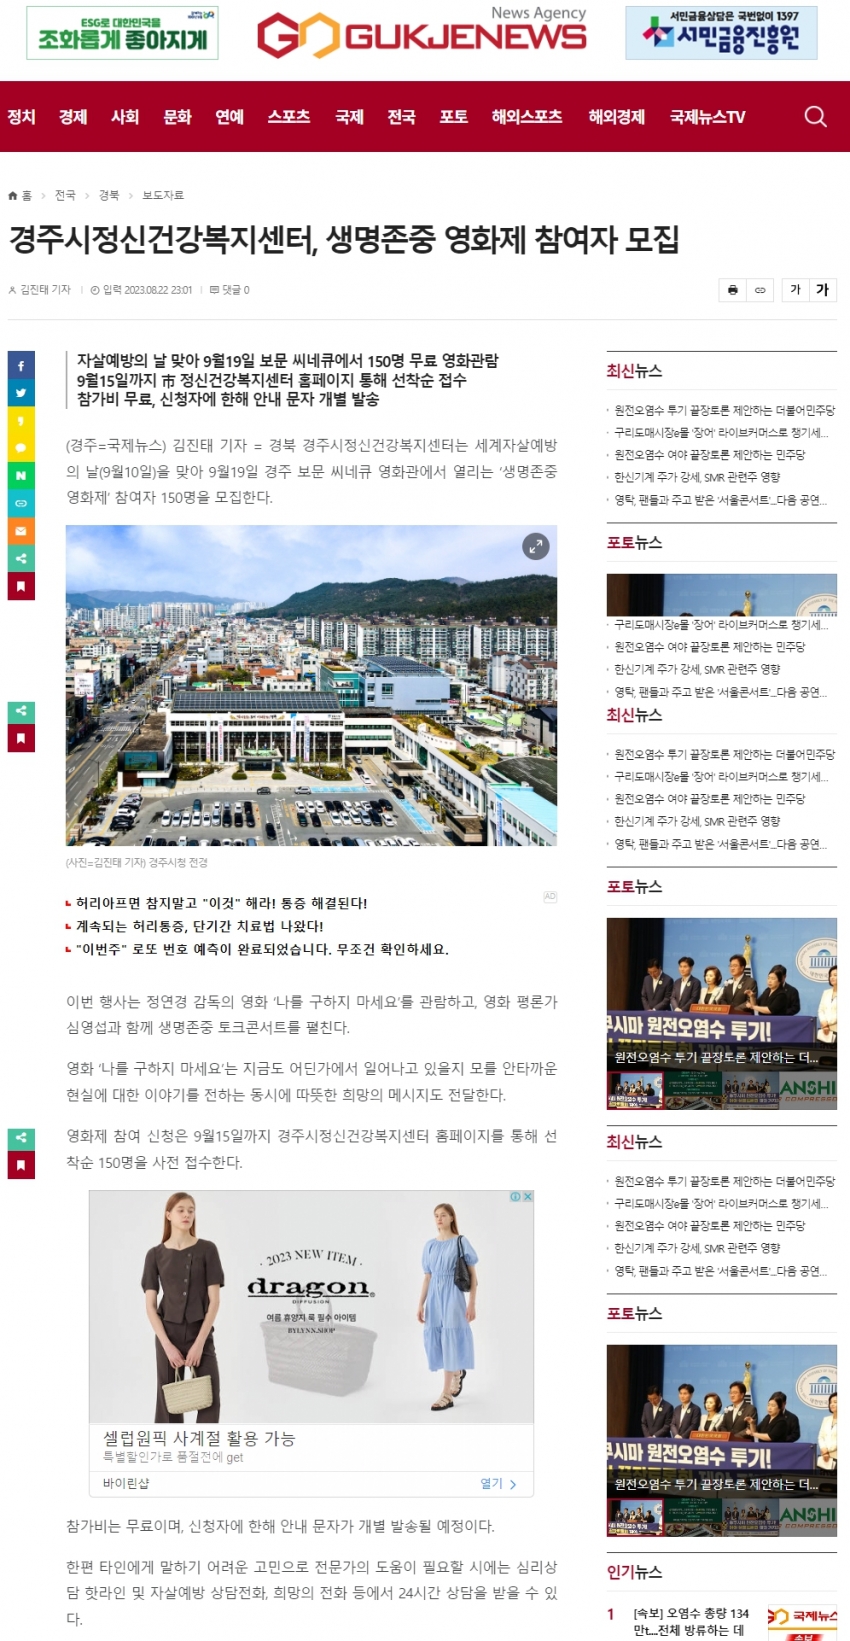 경주시정신건강복지센터, 생명존중 영화제 참여자 모집_국제뉴스.jpg